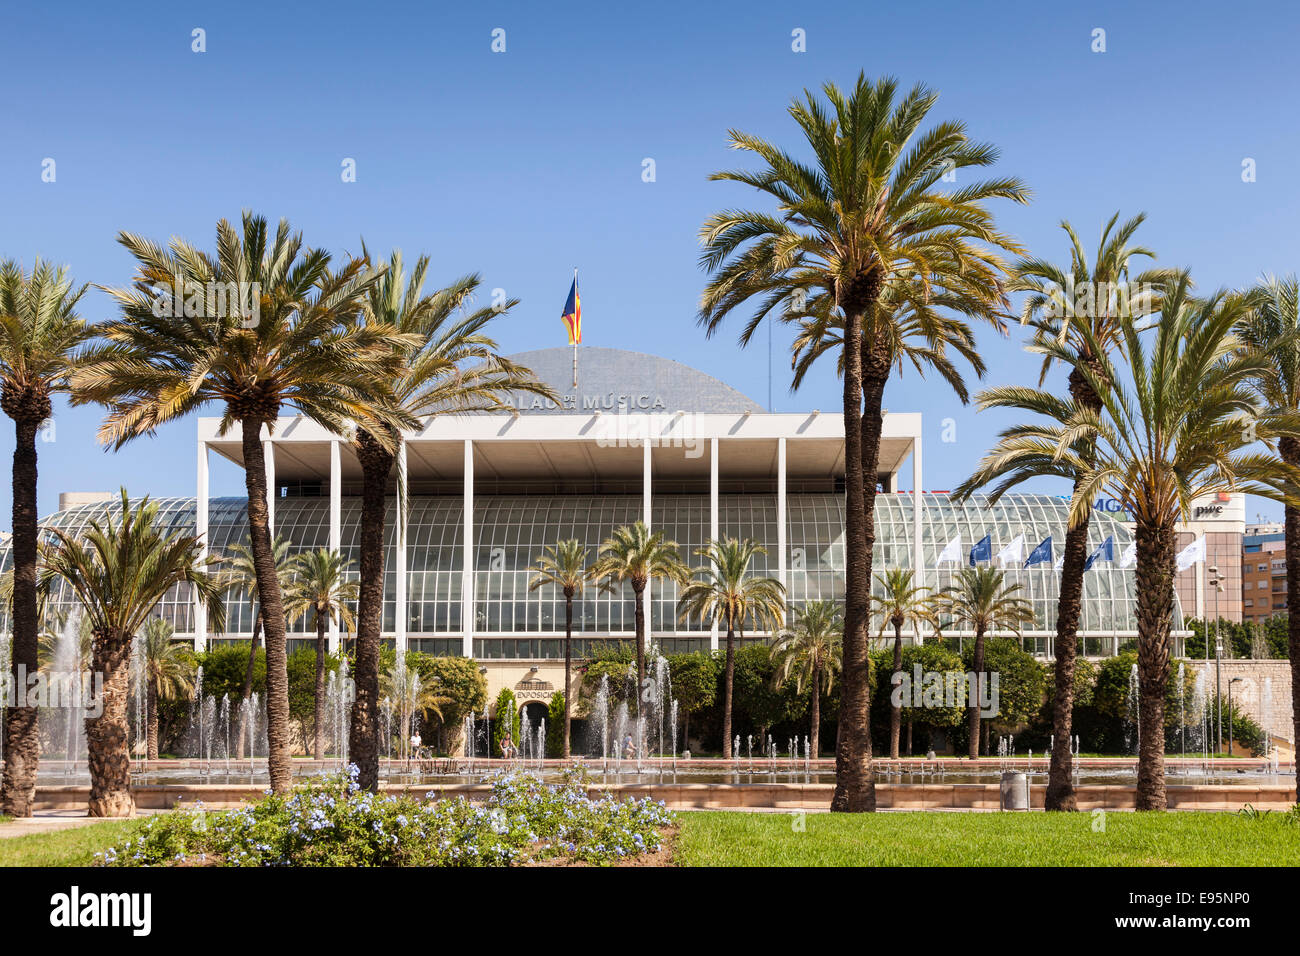 The Palau de la Musica in the Turia gardens, Valencia, Spain. Stock Photo